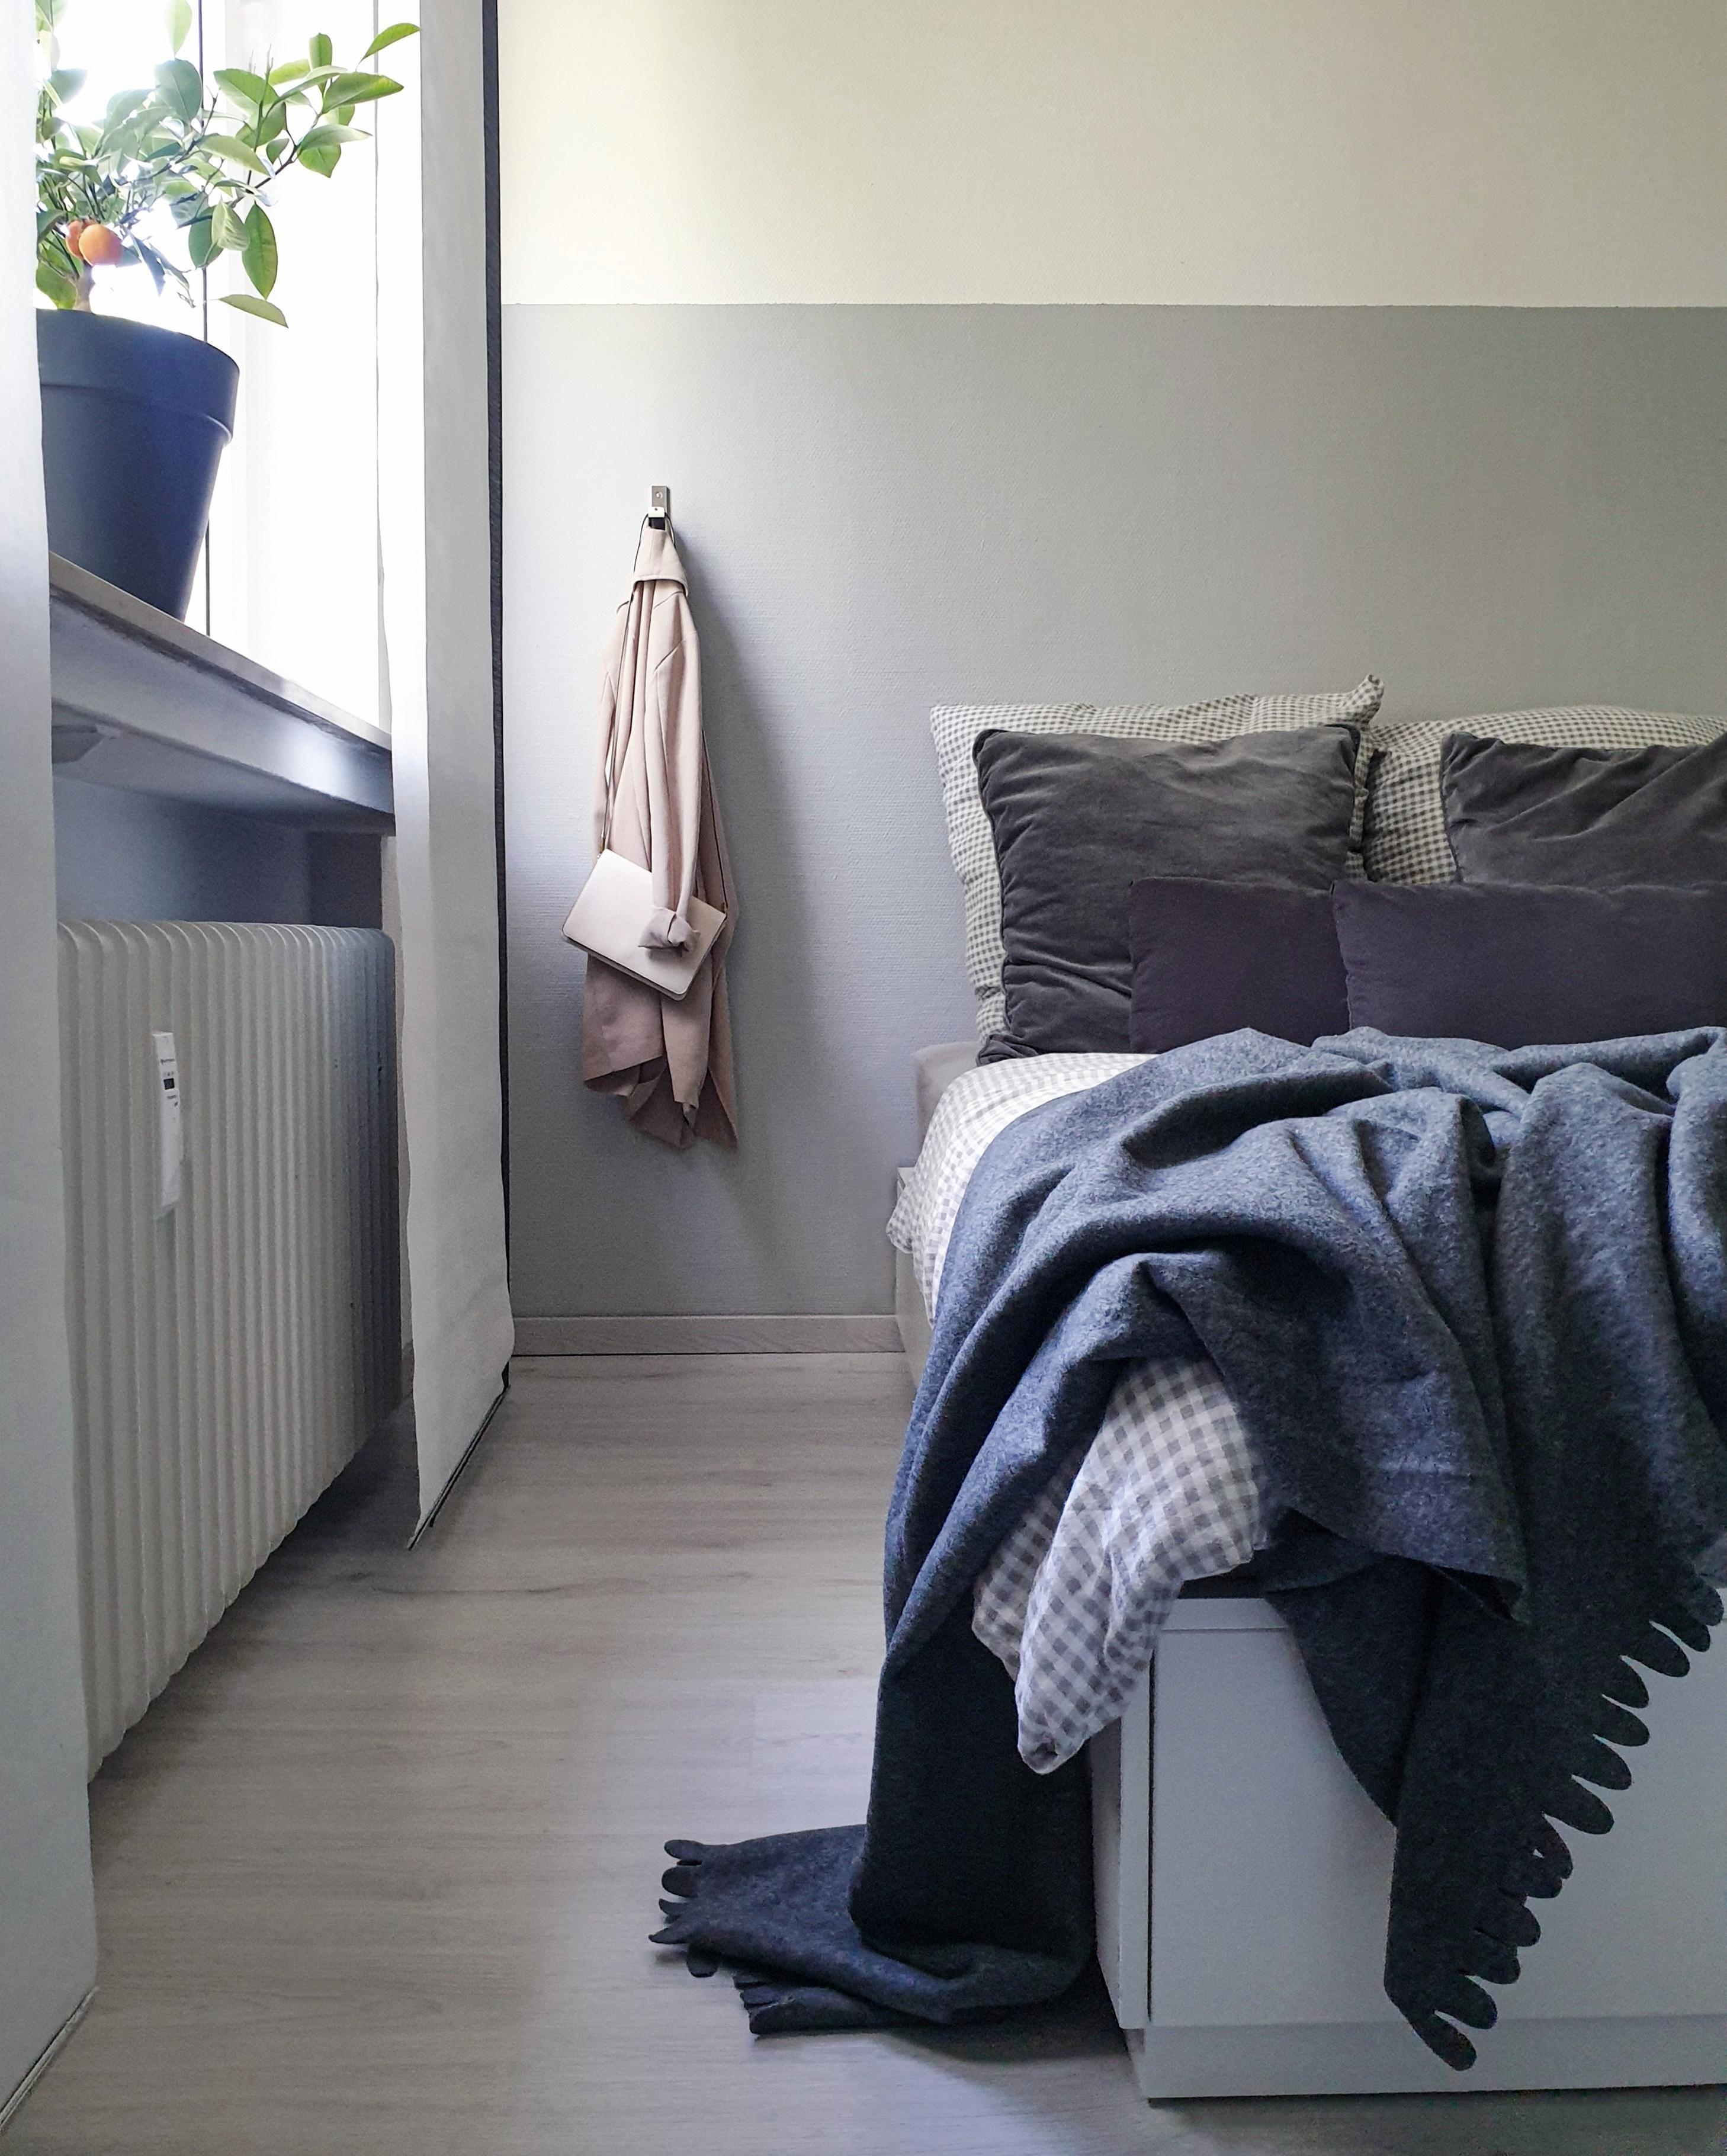 #schlafzimmer #bedroom #schlafzimmerideen #bett #bettwäsche #wohninspiration #interior #nordicminimalism